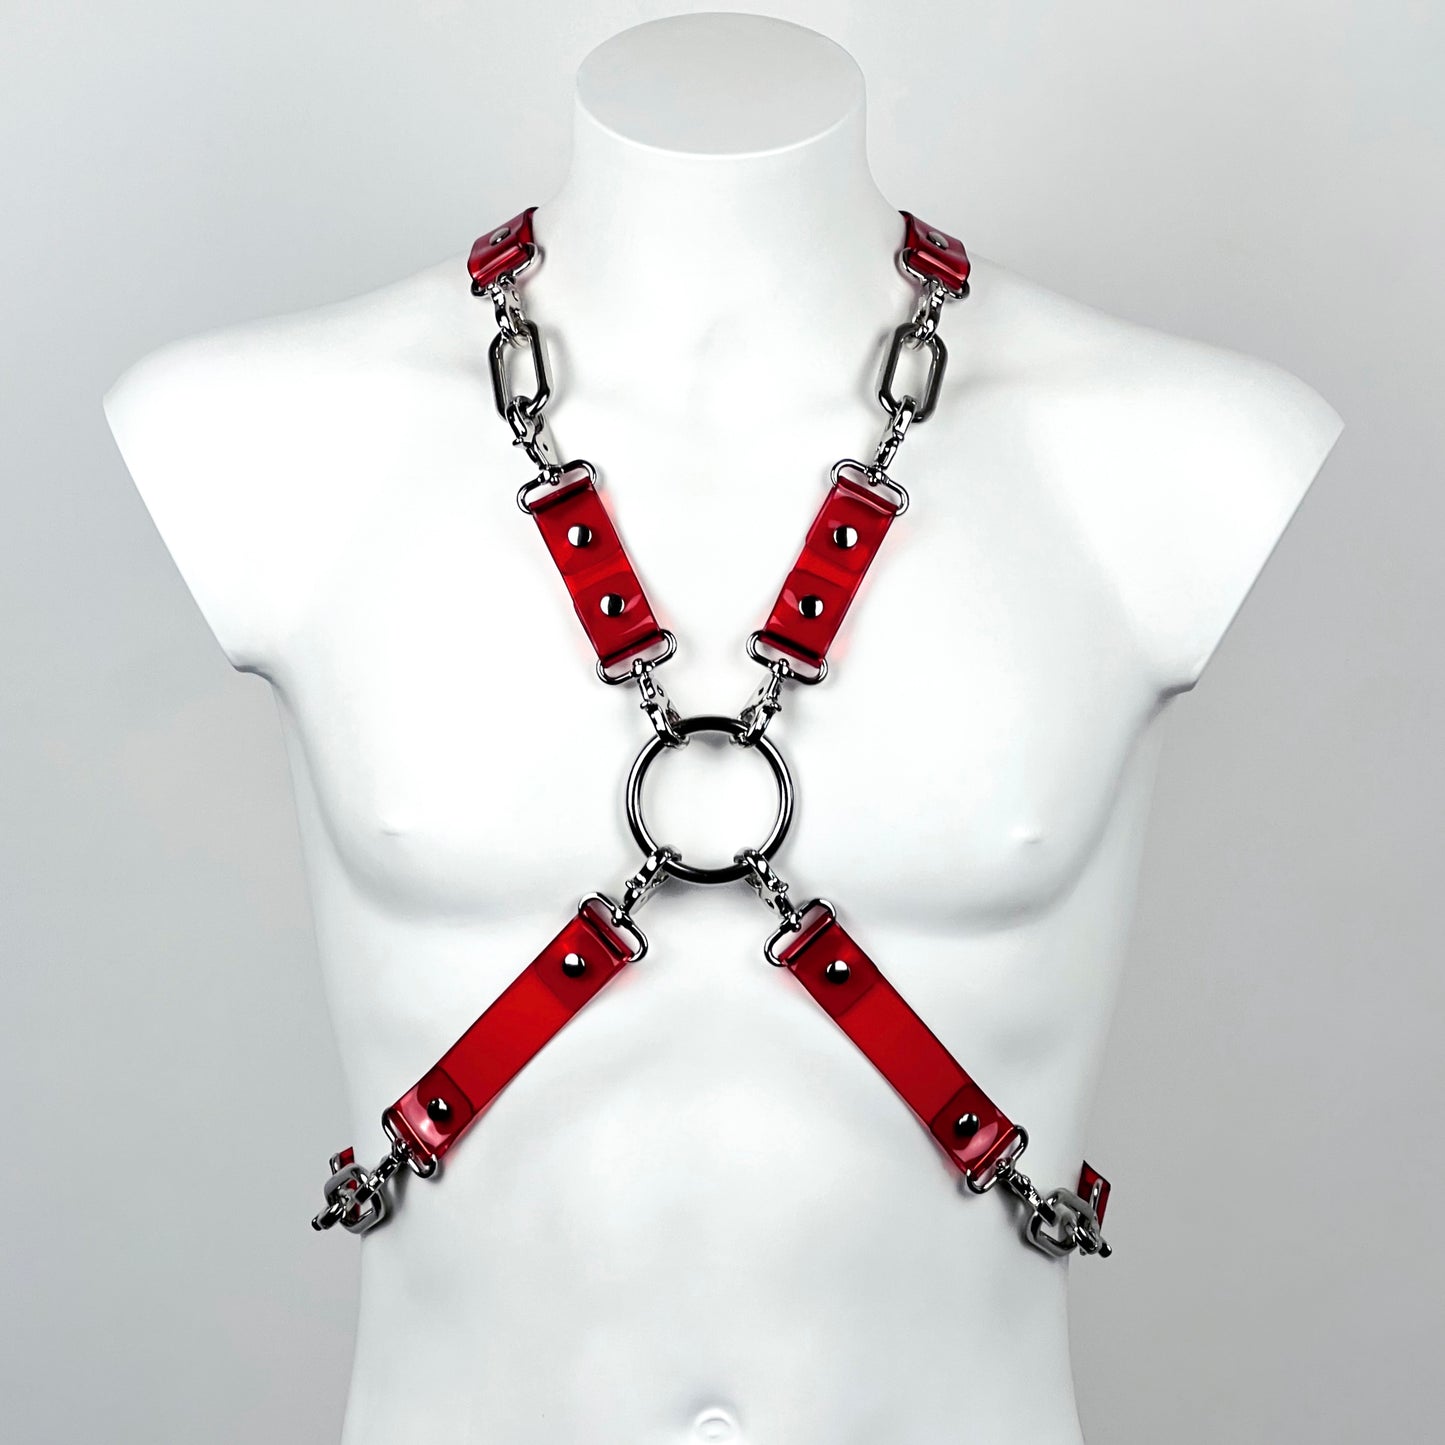 Nexus harness